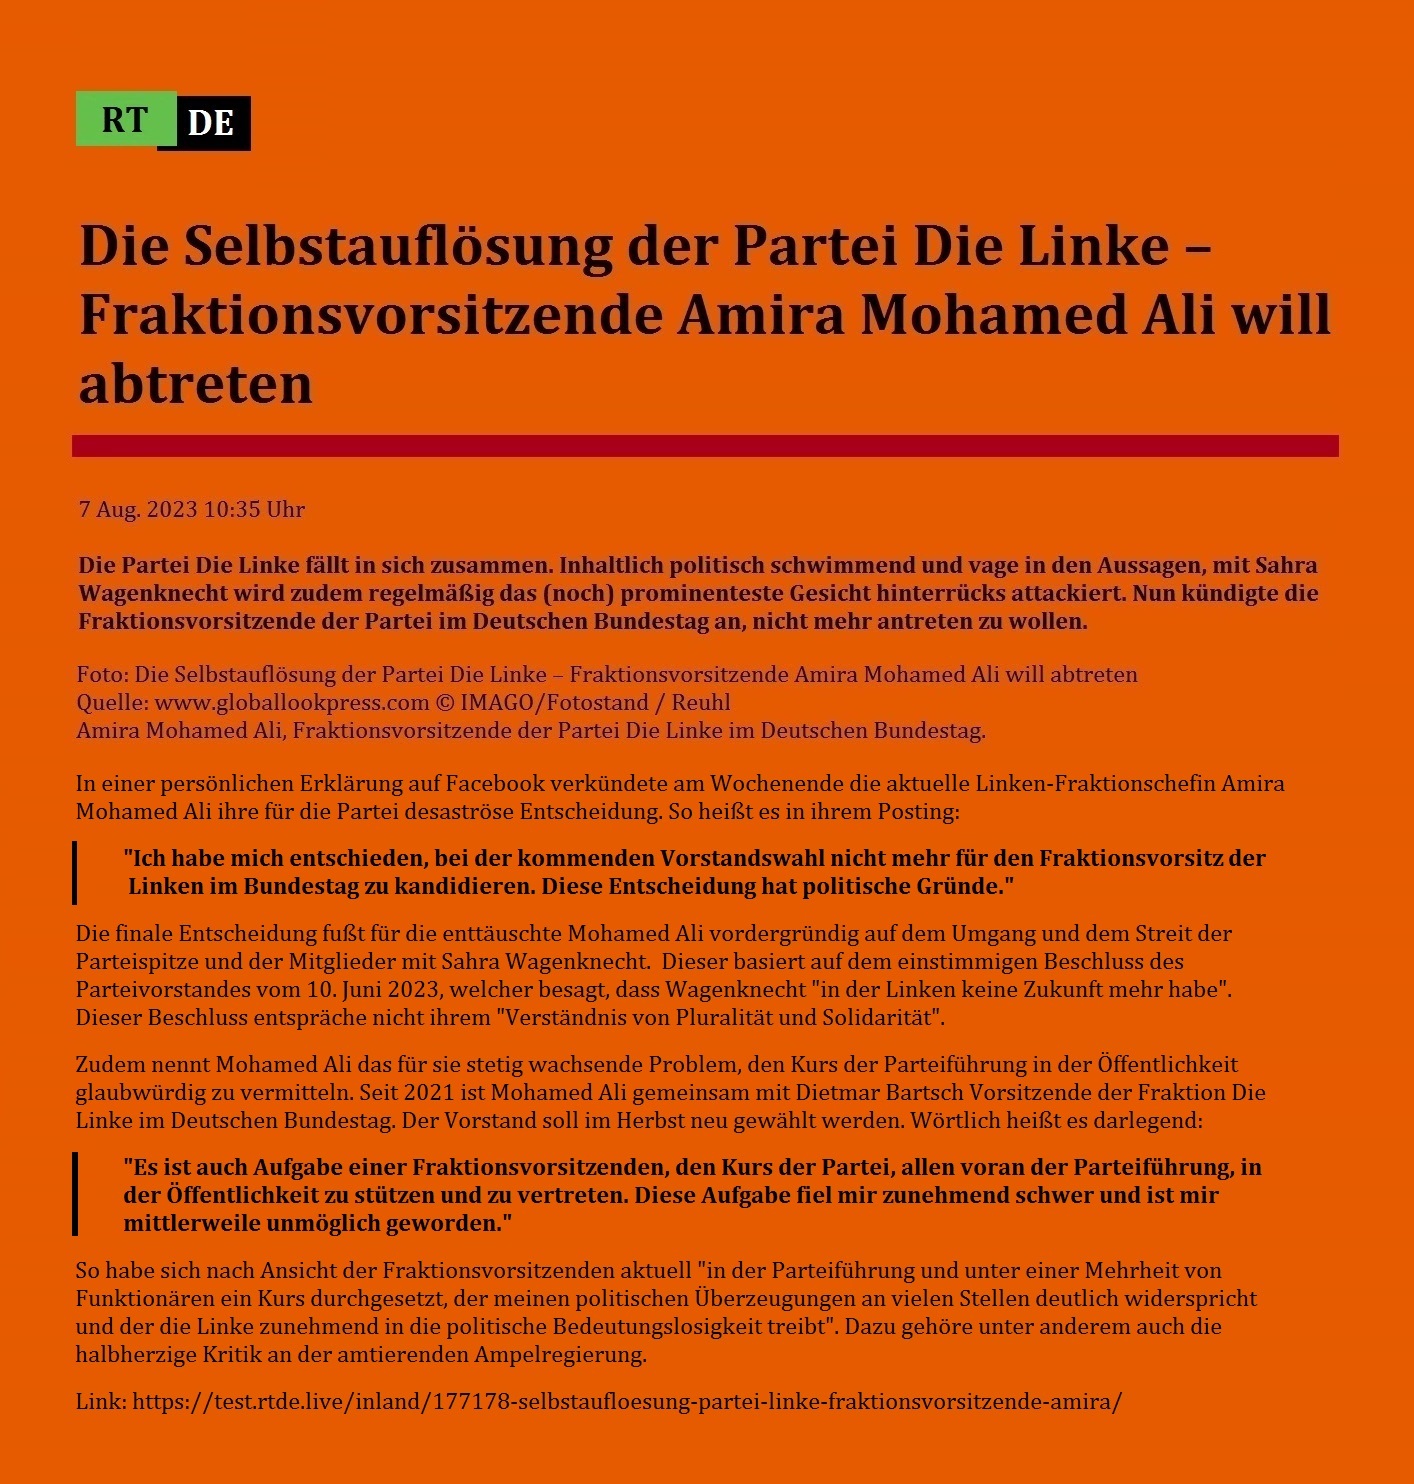 Die Selbstauflösung der Partei Die Linke – Fraktionsvorsitzende Amira Mohamed Ali will abtreten - 7 Aug. 2023 10:35 Uhr - Die Partei Die Linke fällt in sich zusammen. Inhaltlich politisch schwimmend und vage in den Aussagen, mit Sahra Wagenknecht wird zudem regelmäßig das (noch) prominenteste Gesicht hinterrücks attackiert. Nun kündigte die Fraktionsvorsitzende der Partei im Deutschen Bundestag an, nicht mehr antreten zu wollen. - 7 Aug. 2023 10:35 Uhr - RT DE - Link: https://test.rtde.live/inland/177178-selbstaufloesung-partei-linke-fraktionsvorsitzende-amira/